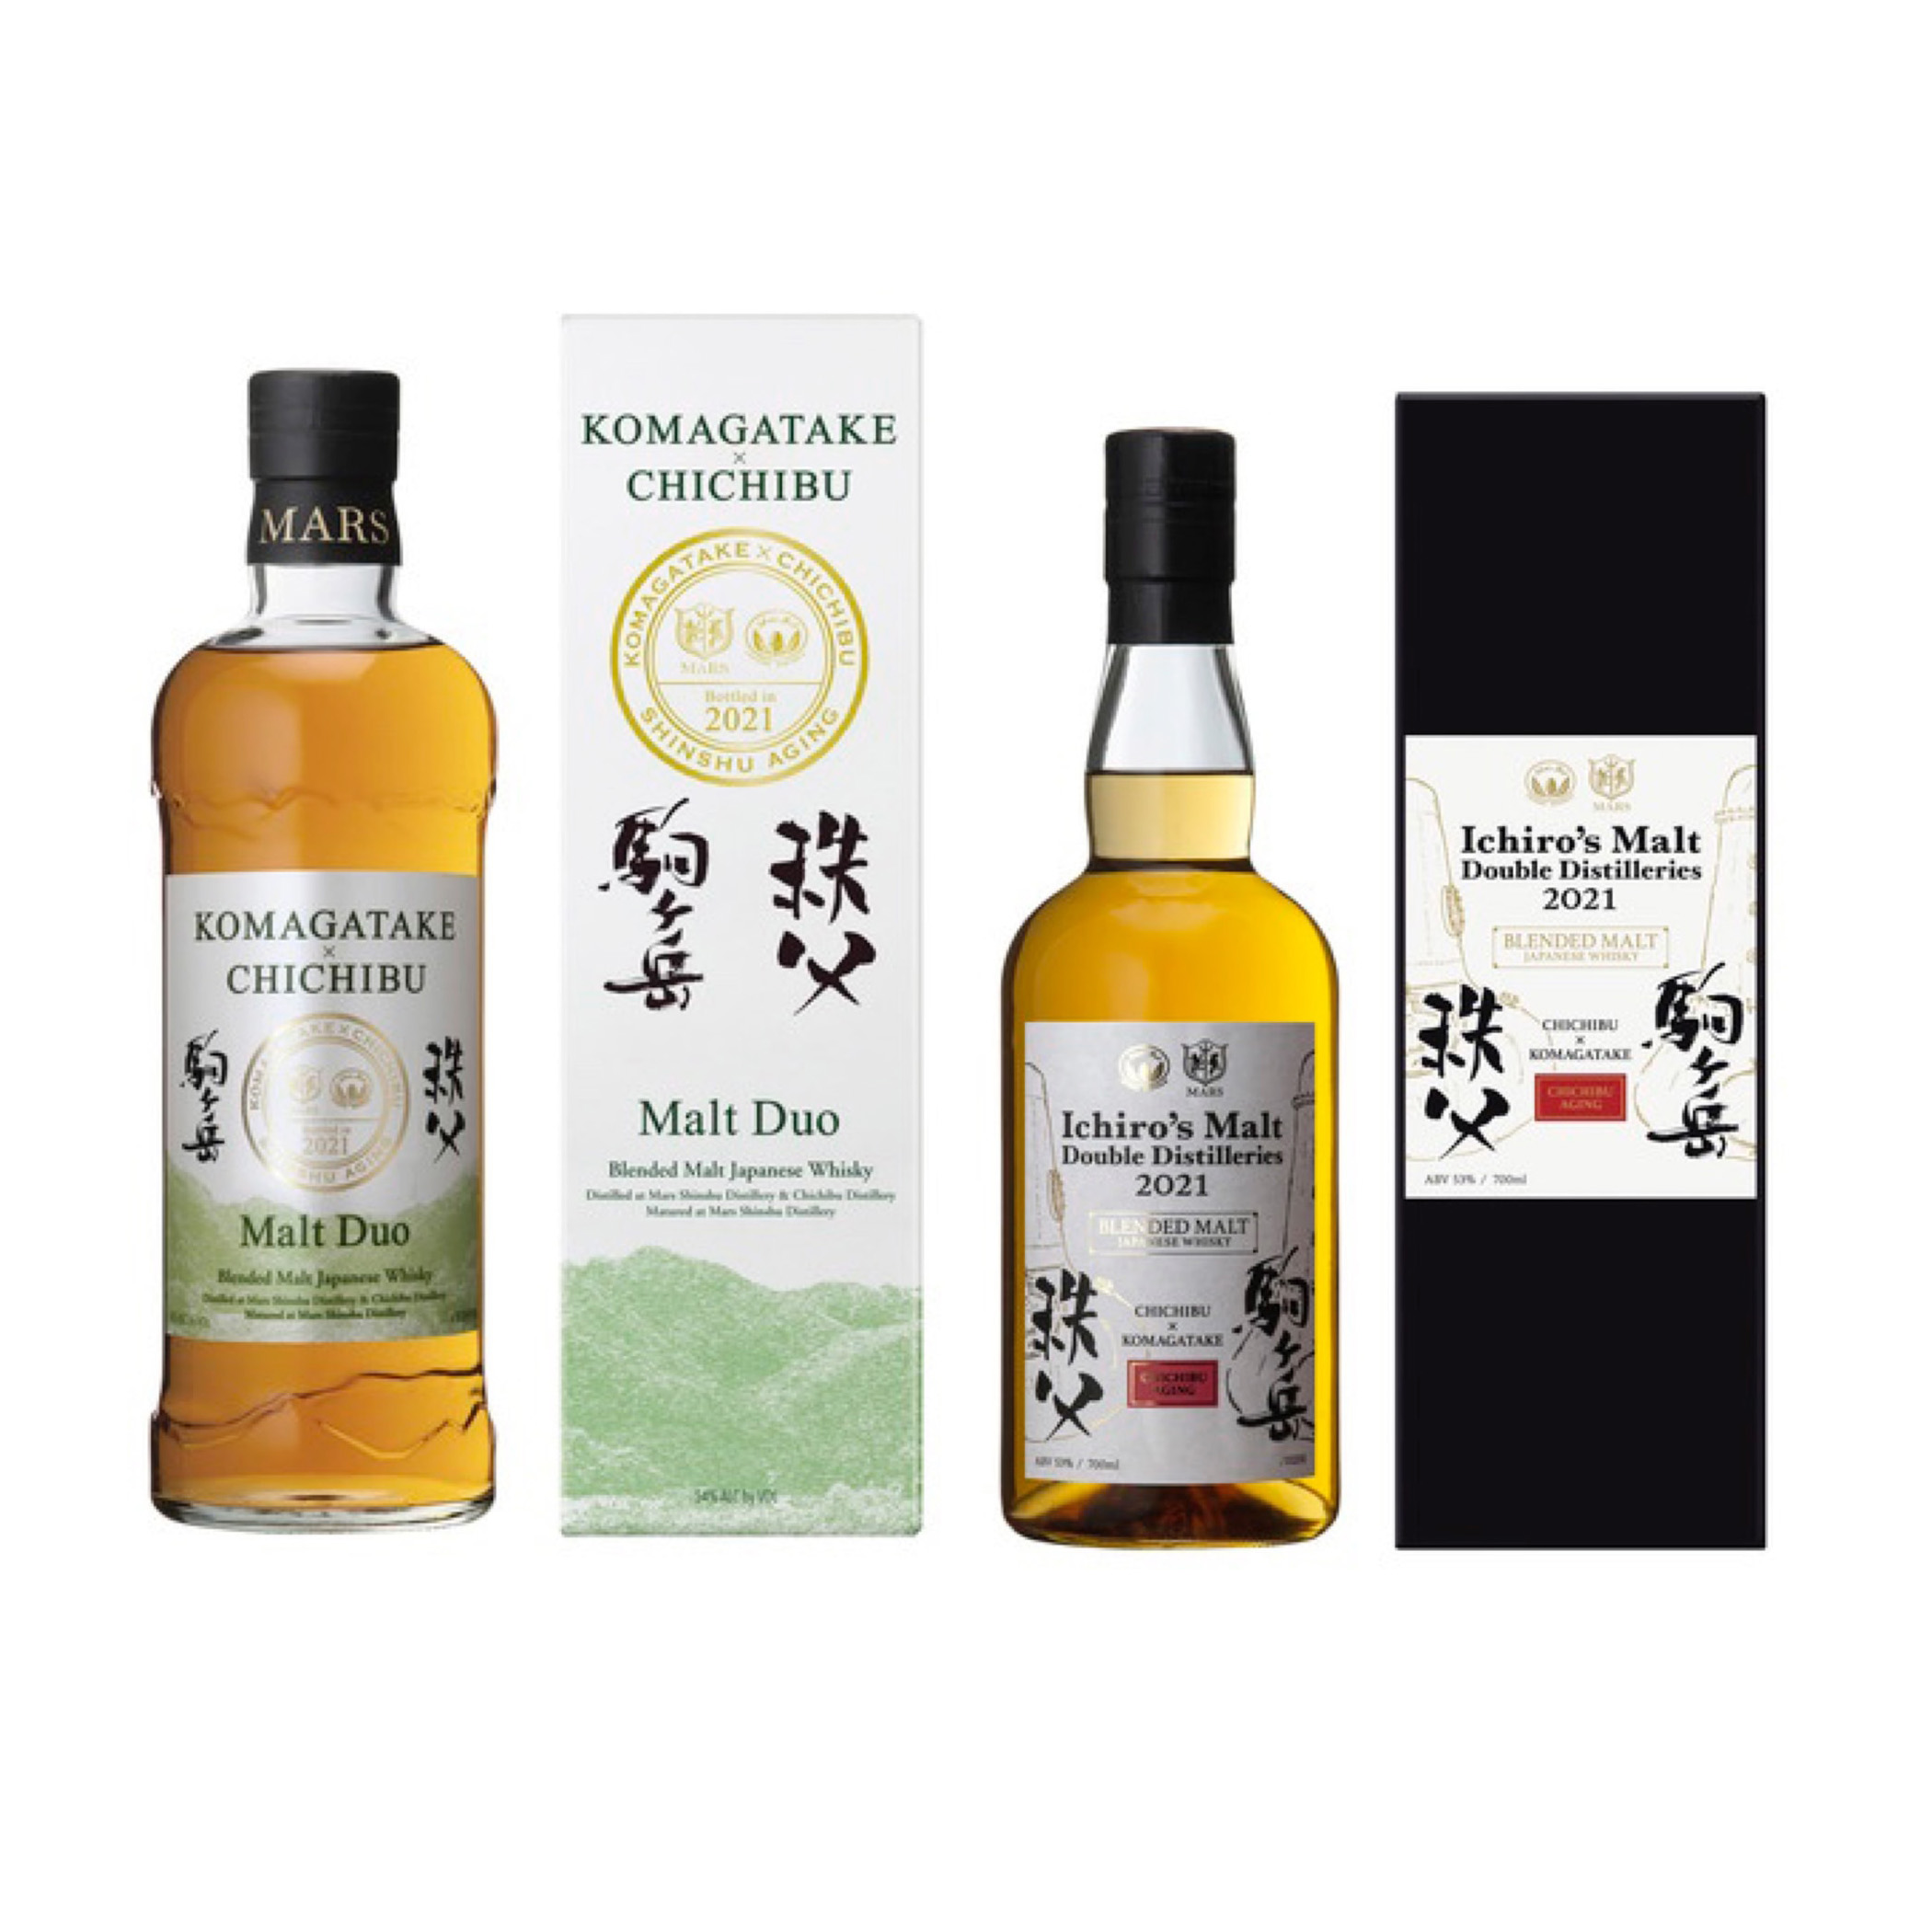 駒ヶ岳 Mars Komagatake × 秩父 Chichibu 2021 Collection Blended Malt Japanese Whisky